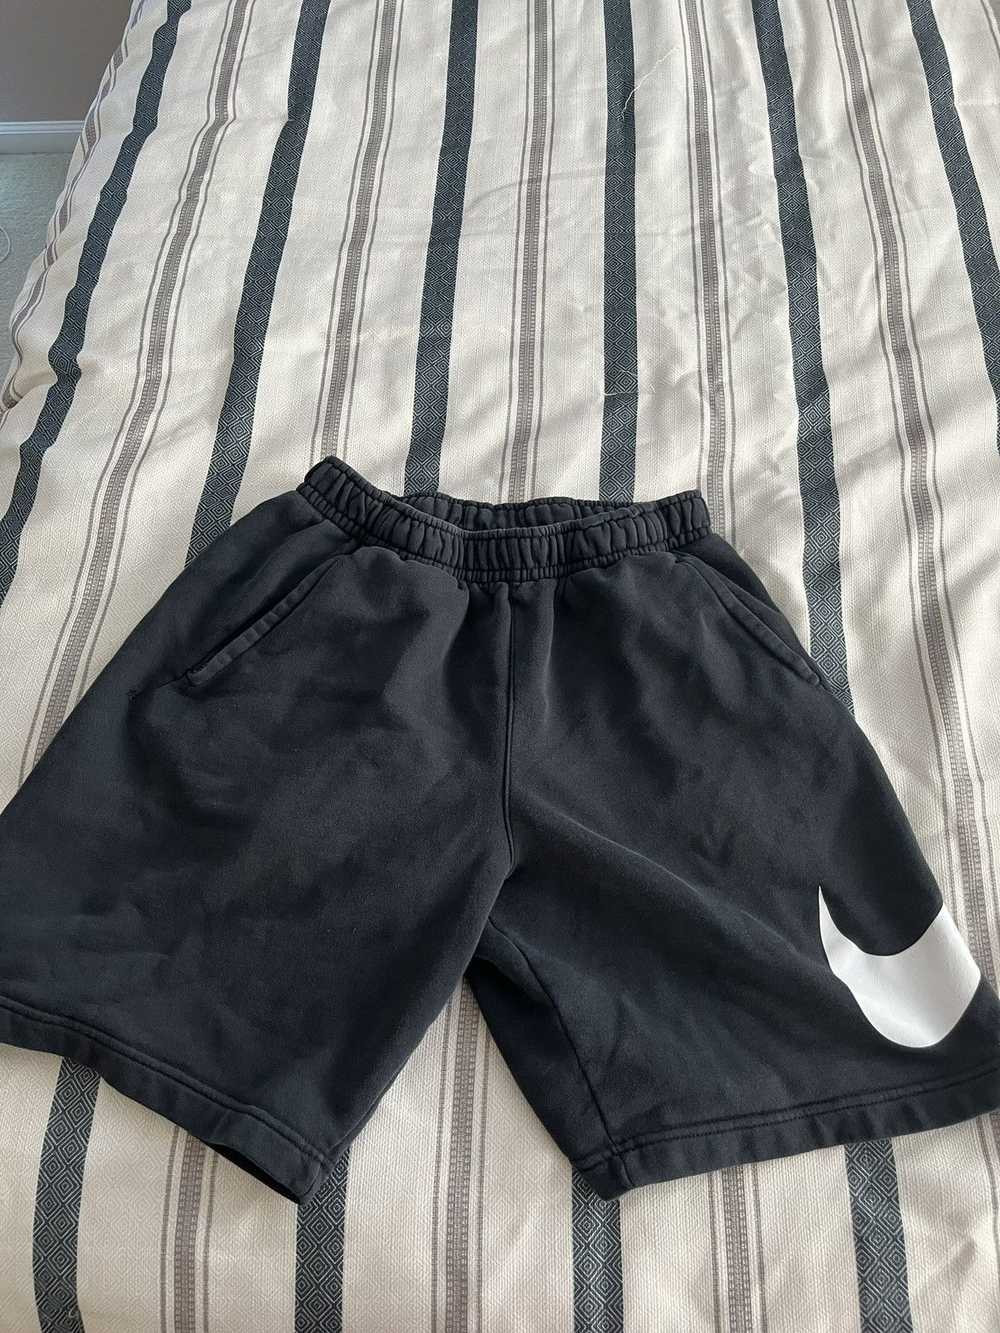 Jordan Brand × Nike × Streetwear Men’s Nike Shorts - image 1